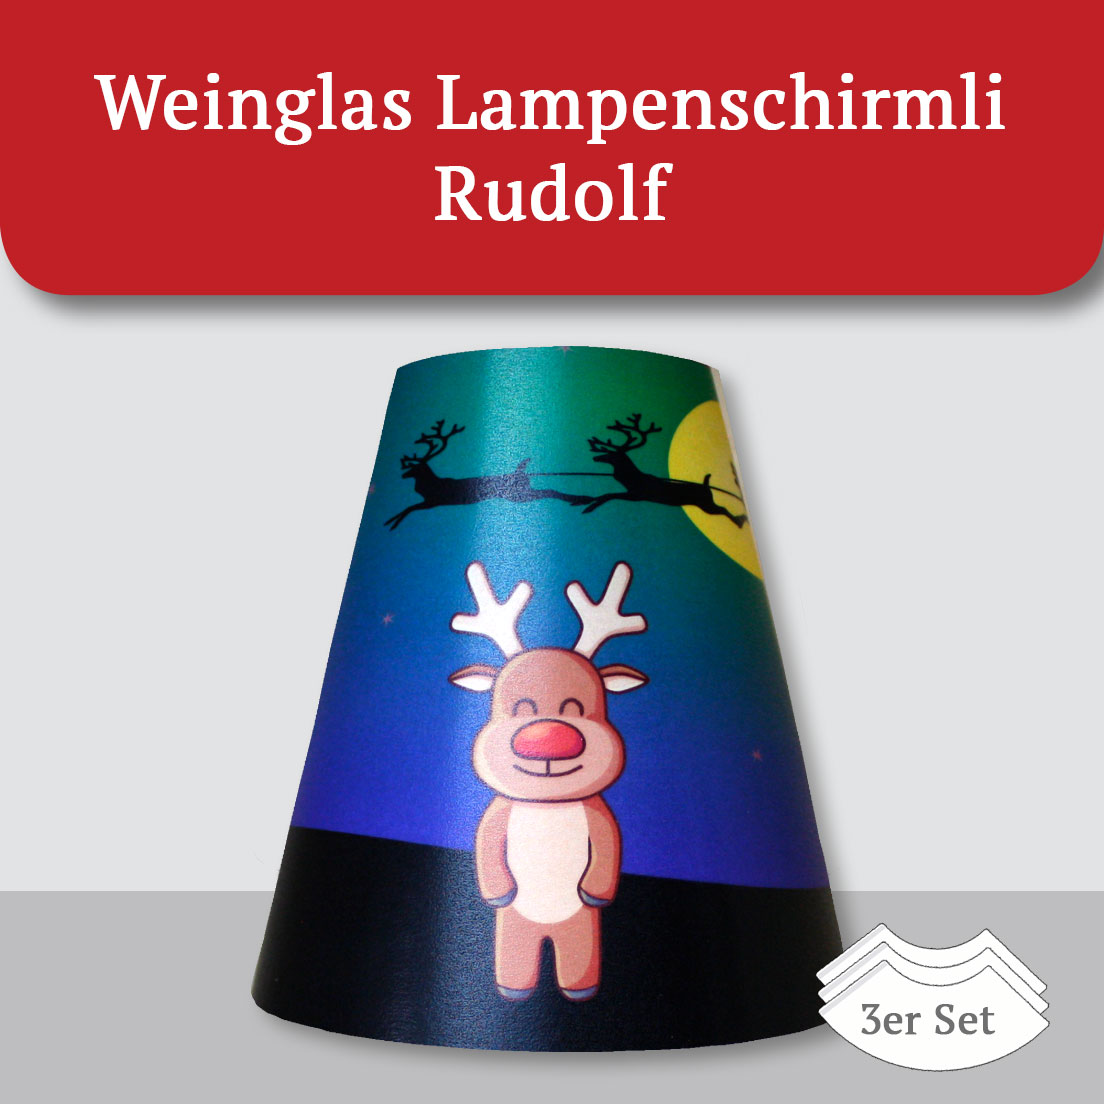 Weinglas Lampenschirmli Rudolf